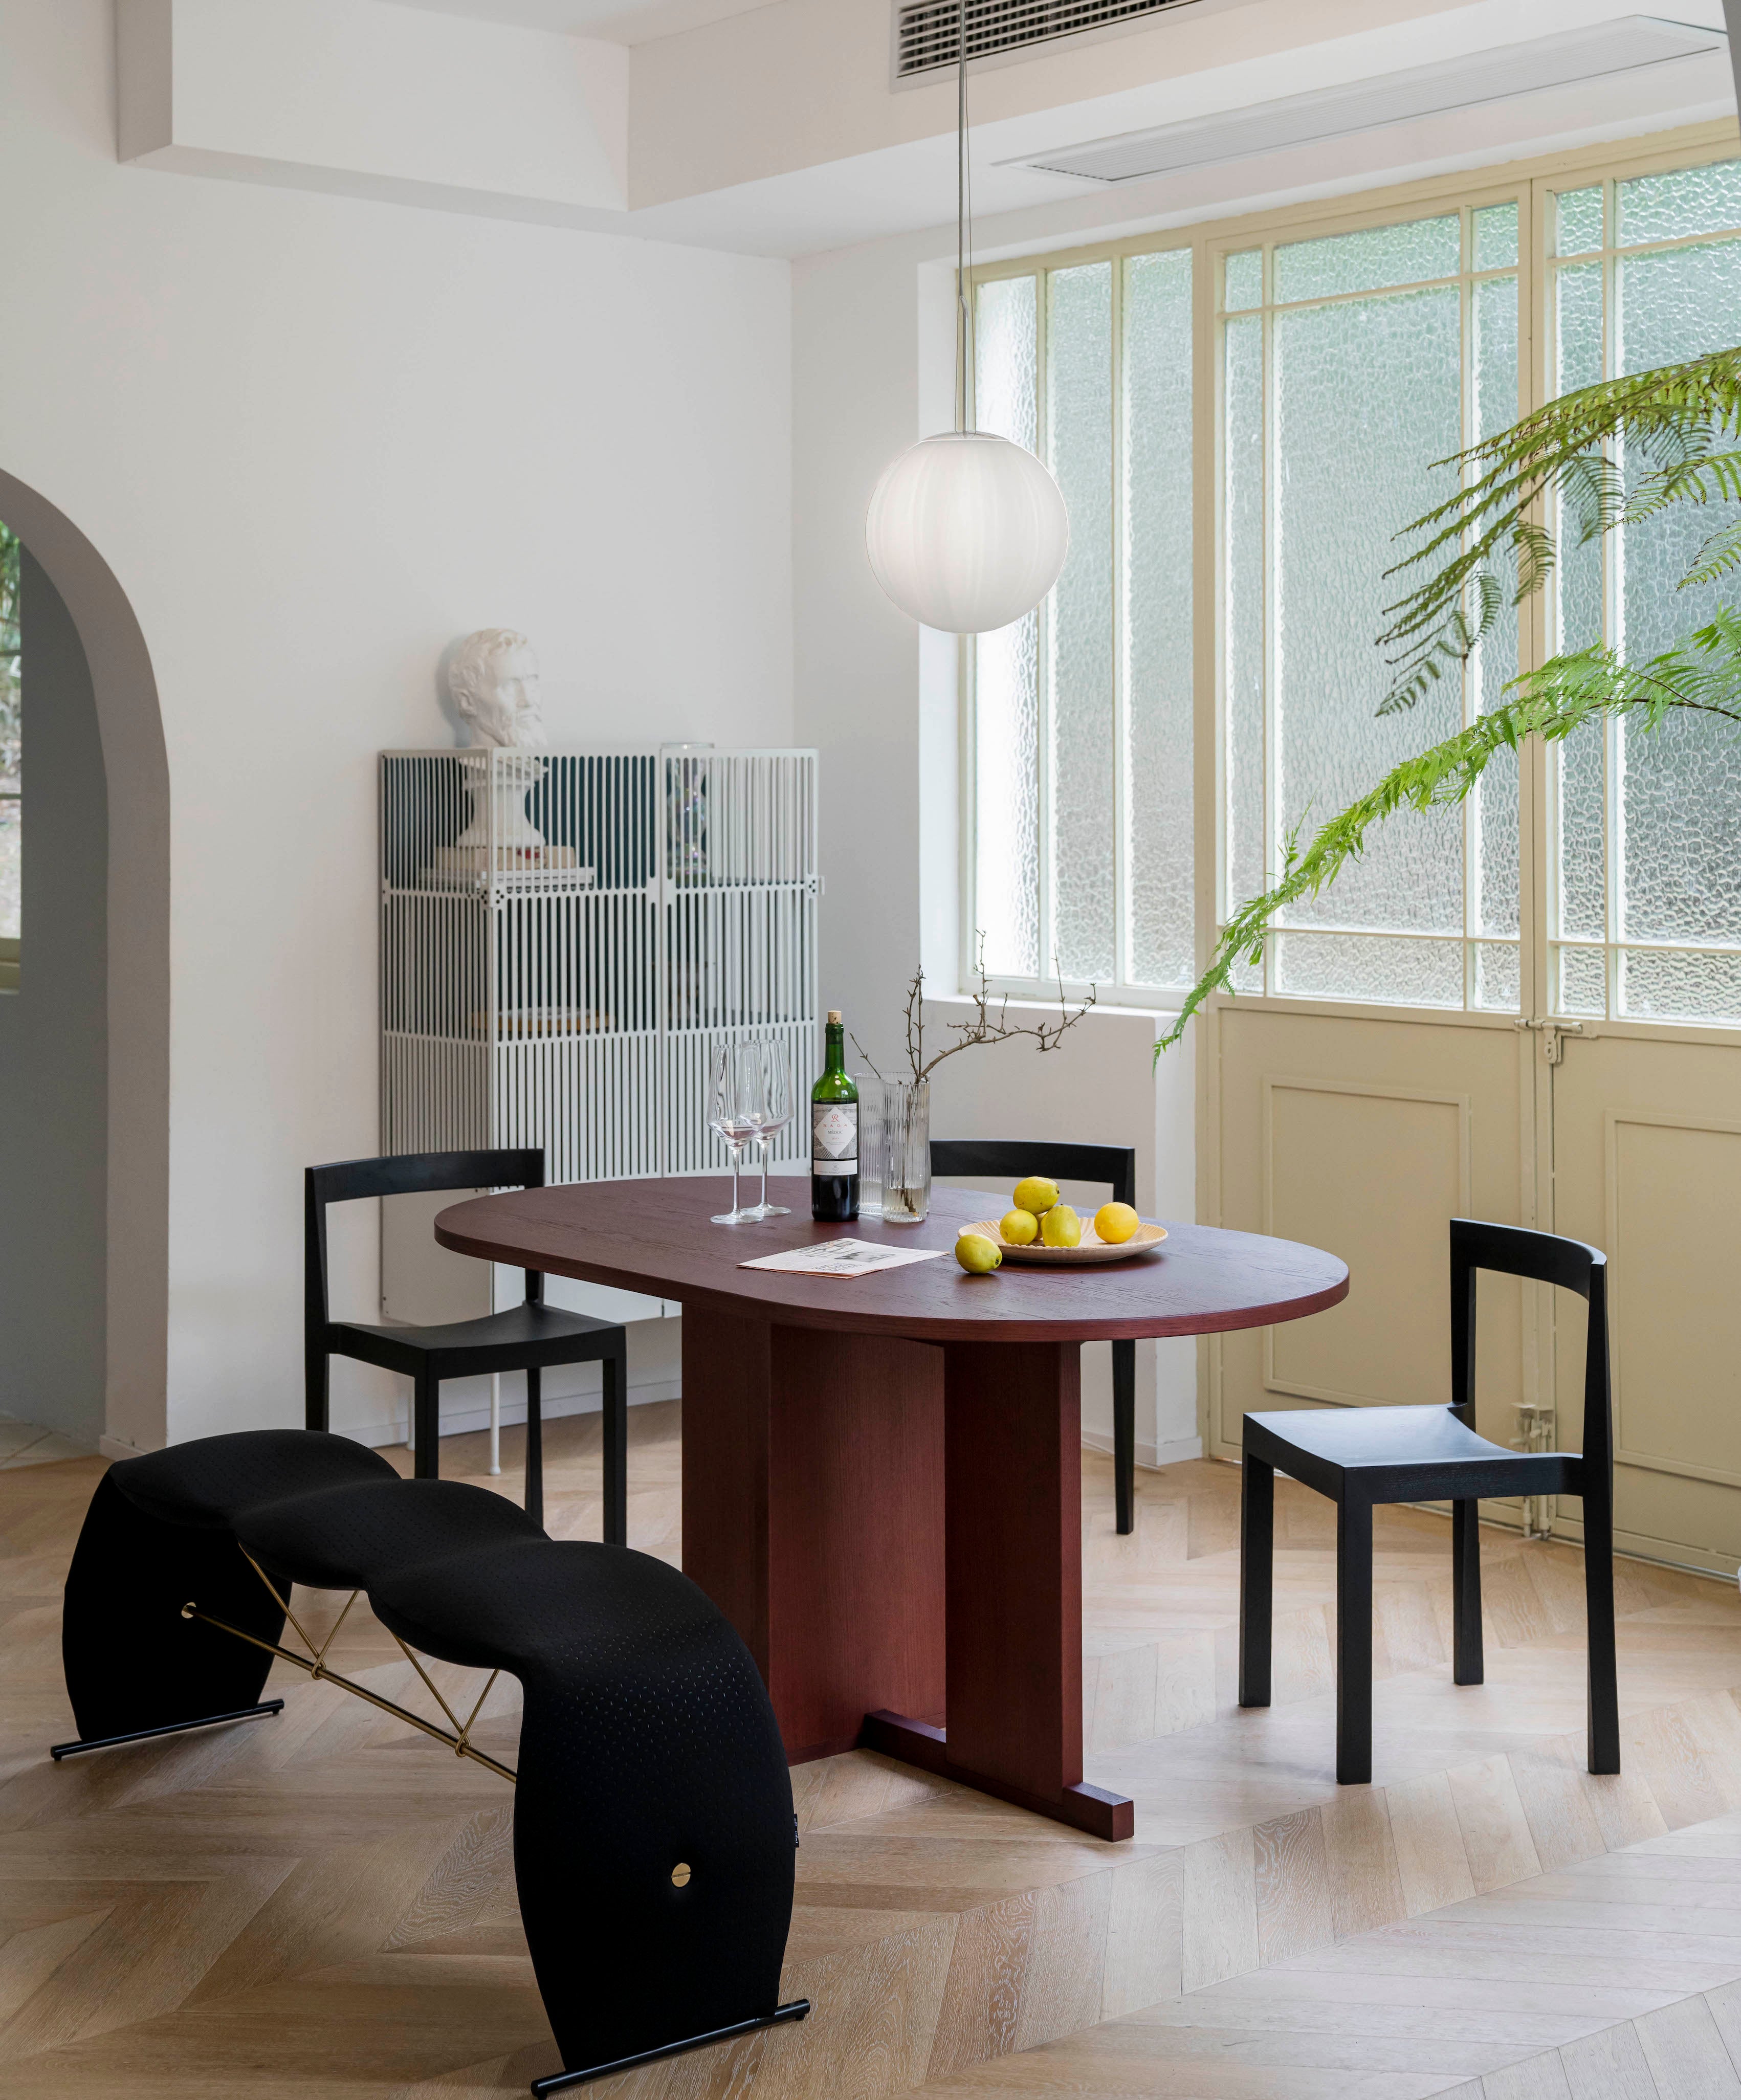 INNER BEAUTY CEILING LAMP  Ziinlife Modern Design Furniture Hong Kong 